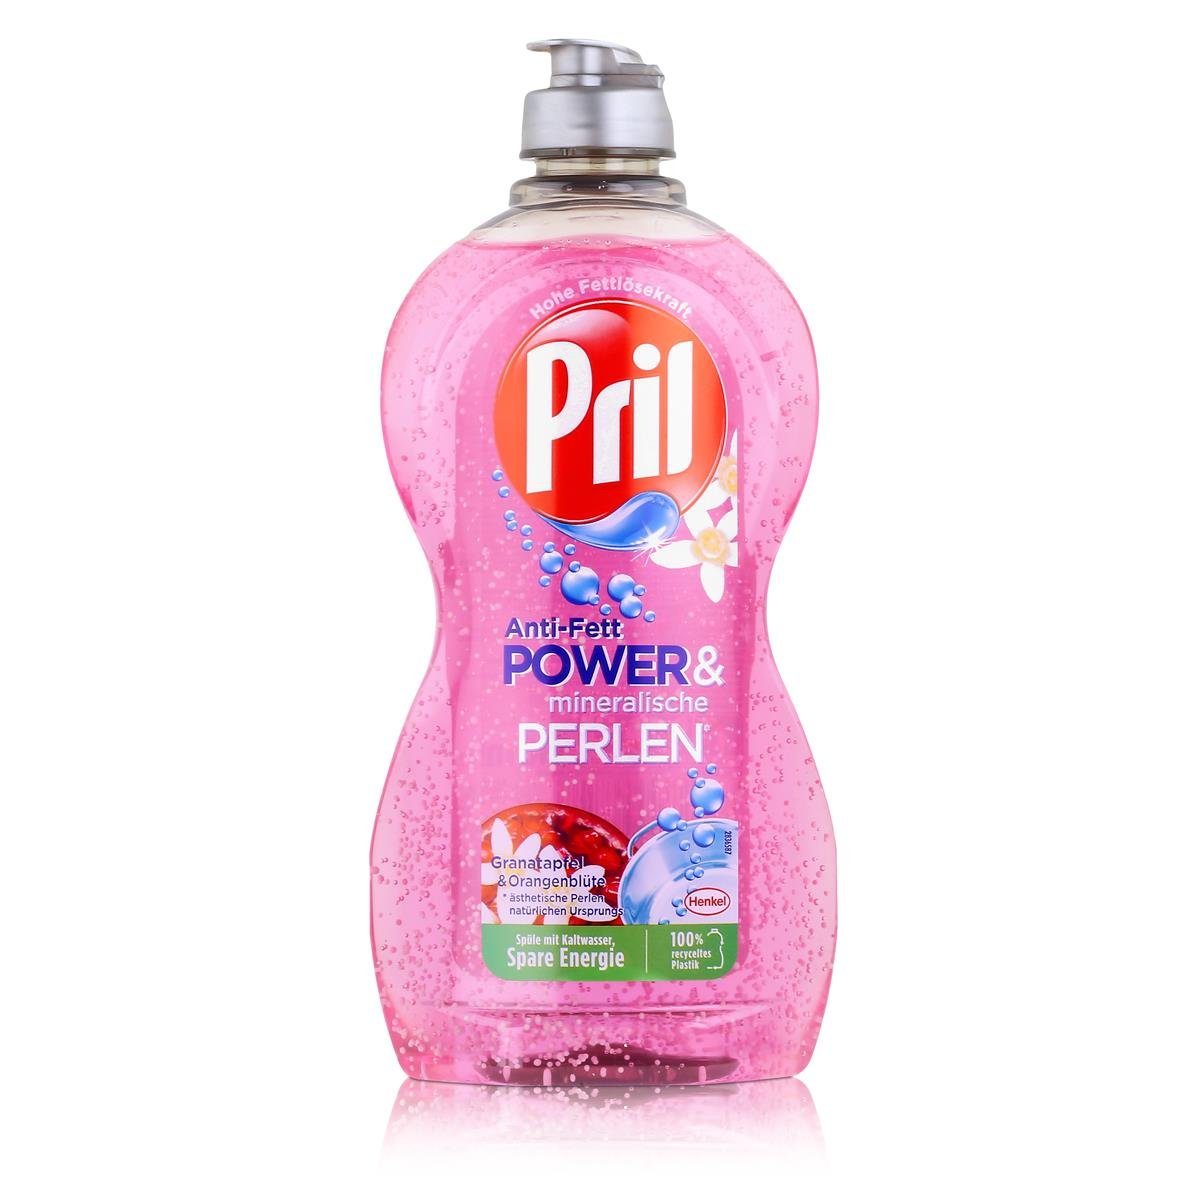 Power & (1er Geschirrspülmittel Spülmittel PRIL Pril 450ml Anti-Fett Orangenblüte Granatapfel